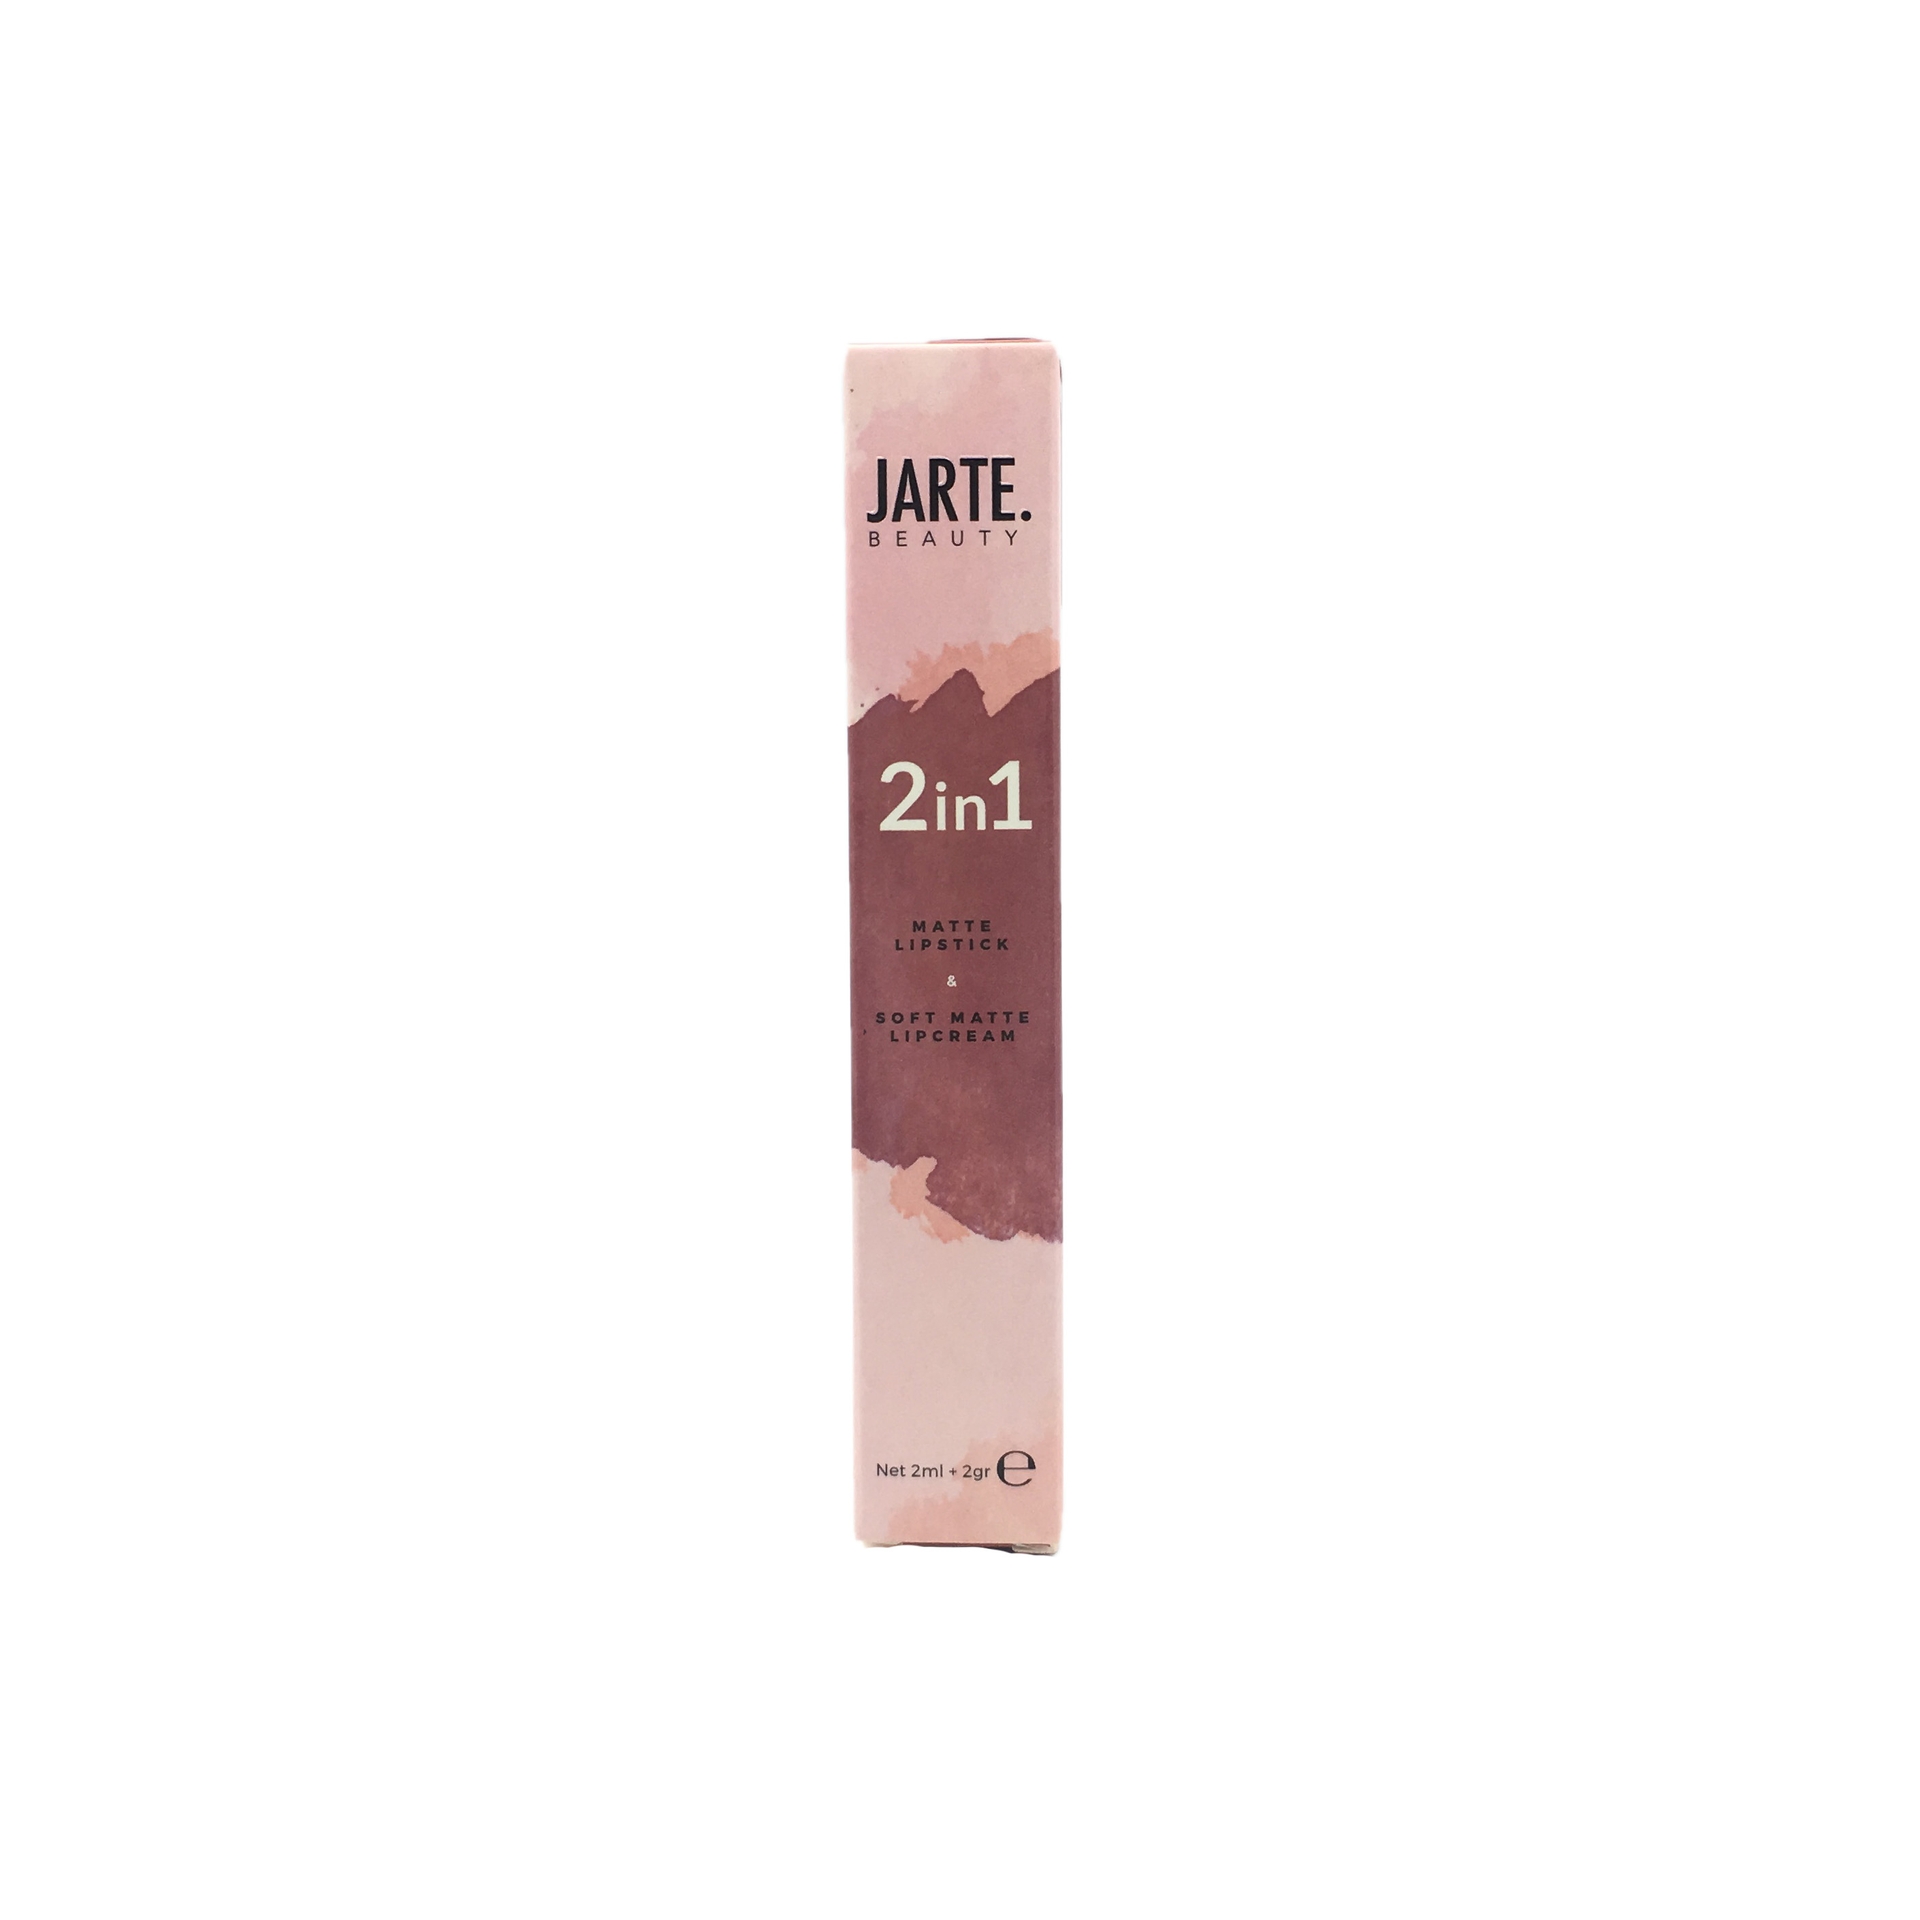 Jarte Beauty 2in1 Matte Lipstick Soft Matte Lip Cream Latte Lips